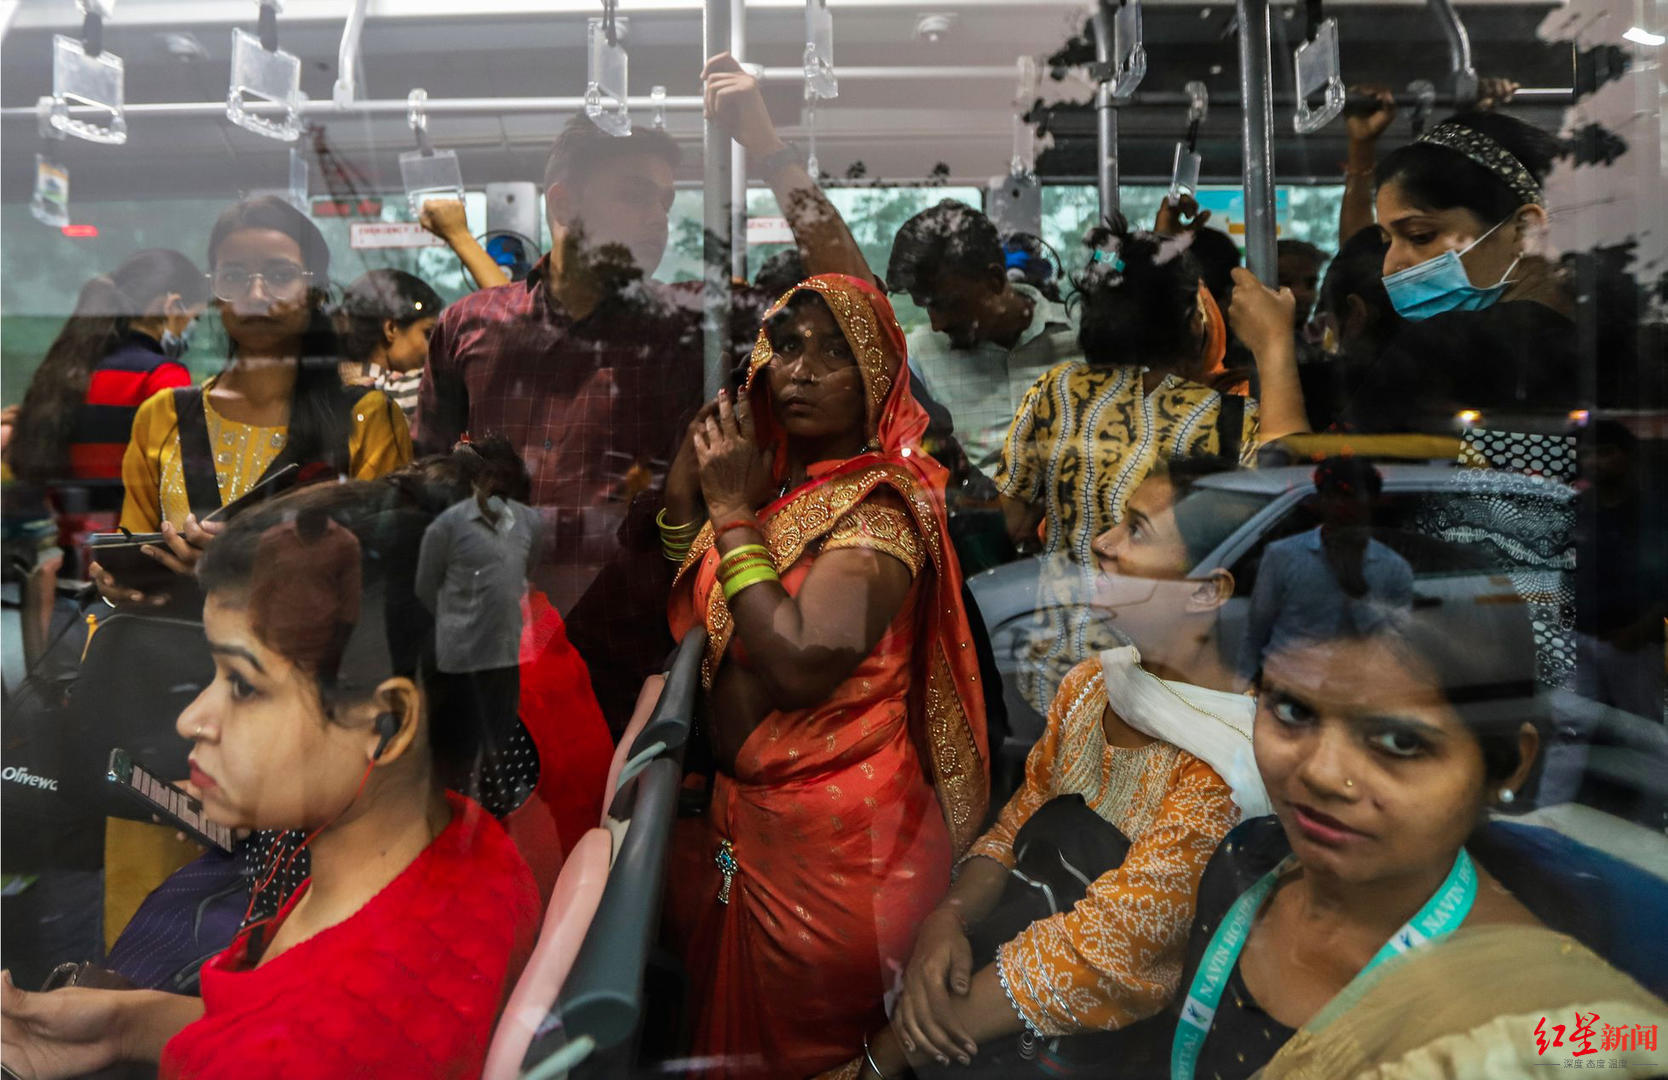 ↑新德里公交车上的乘客